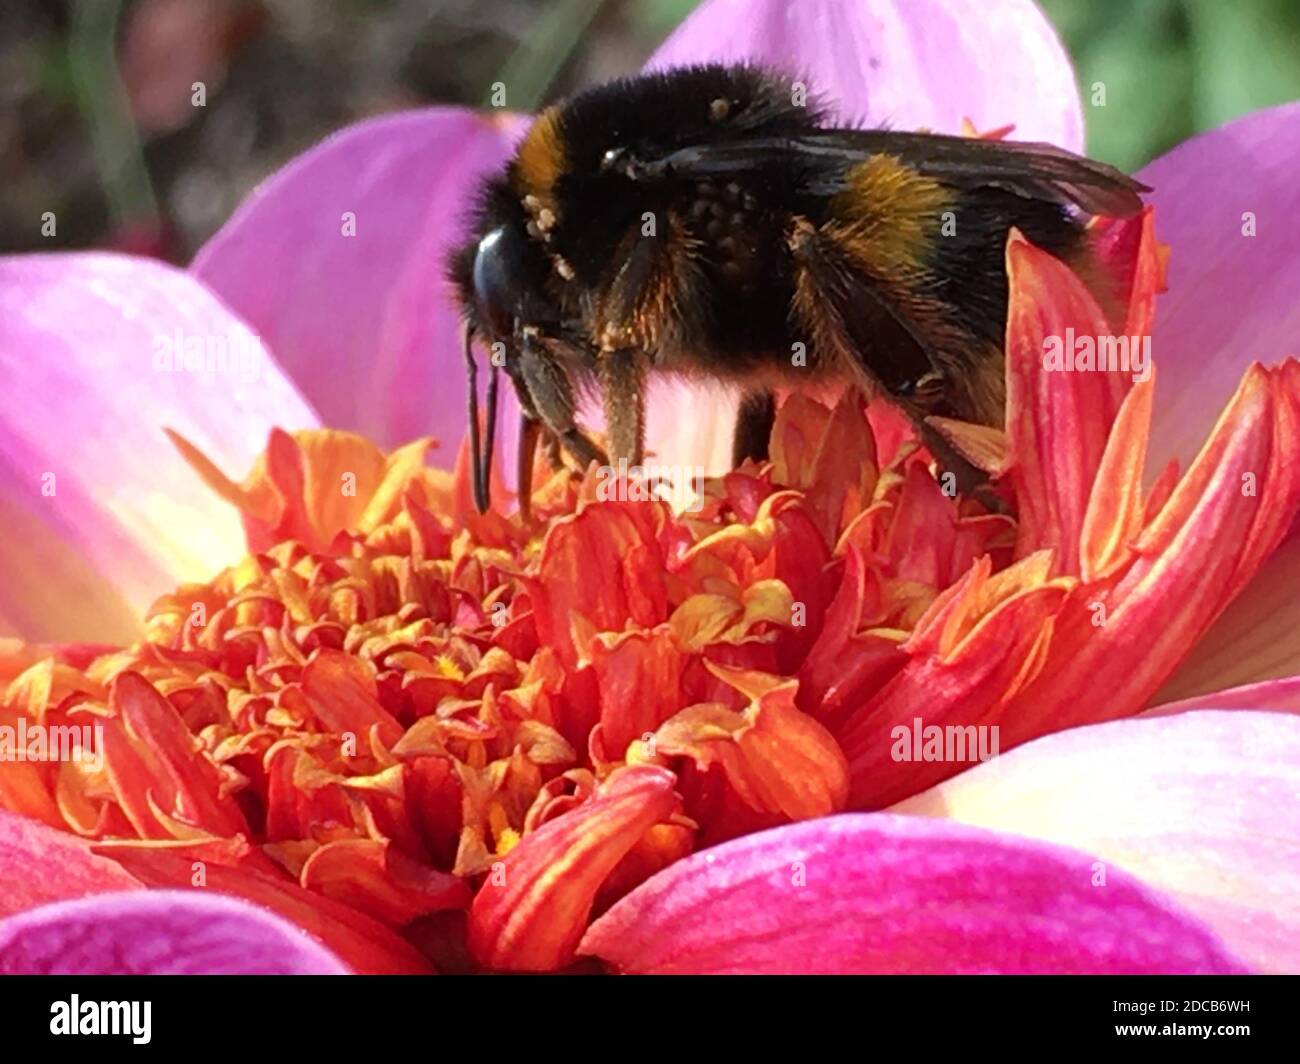 Bumble Bee collectant le pollen d'une fleur de Dahlia dont le centre est jaune, entourée de pétales aux bords rose vif. Automne 2020. Banque D'Images